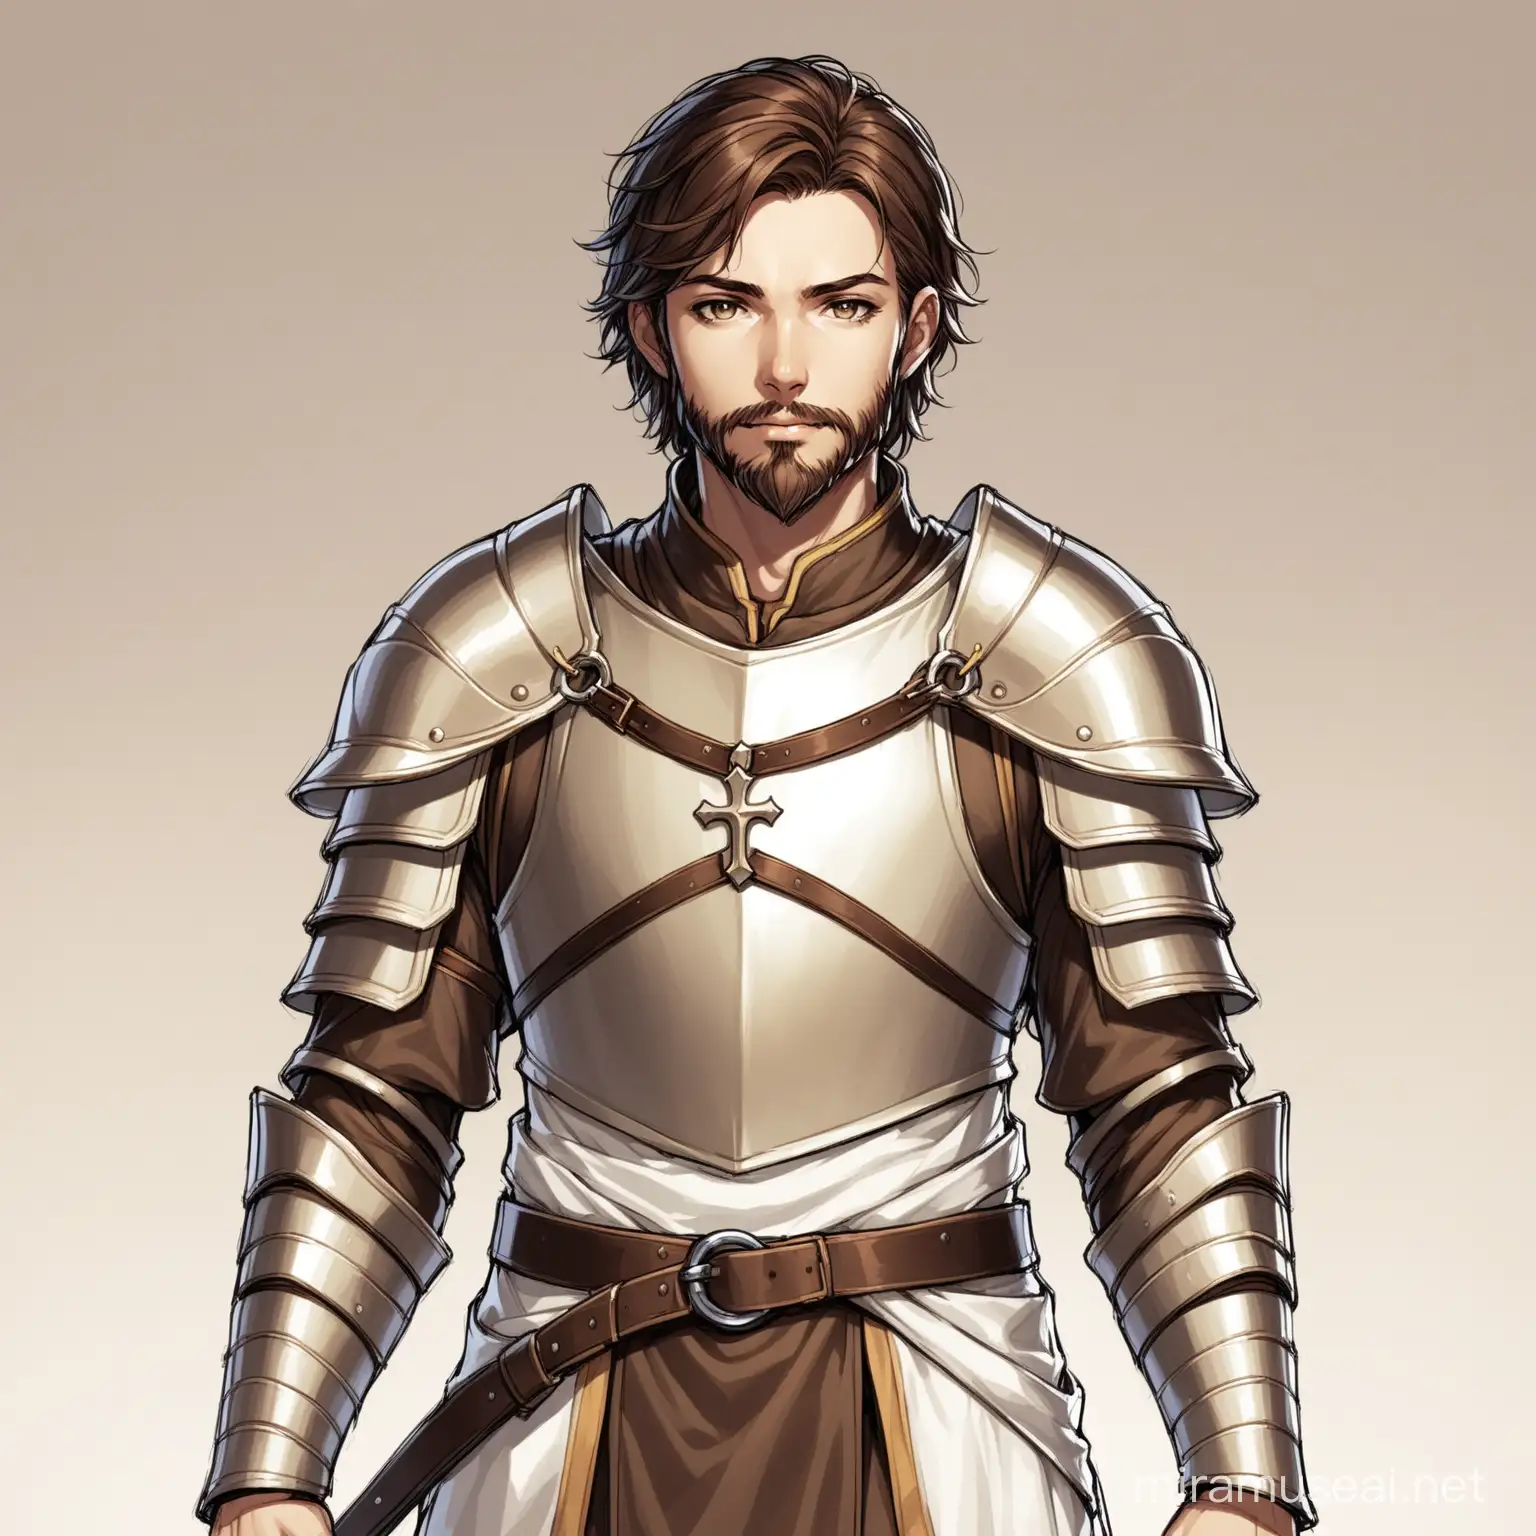 30YearOld Male Human Cleric in Splint Armor Portrait